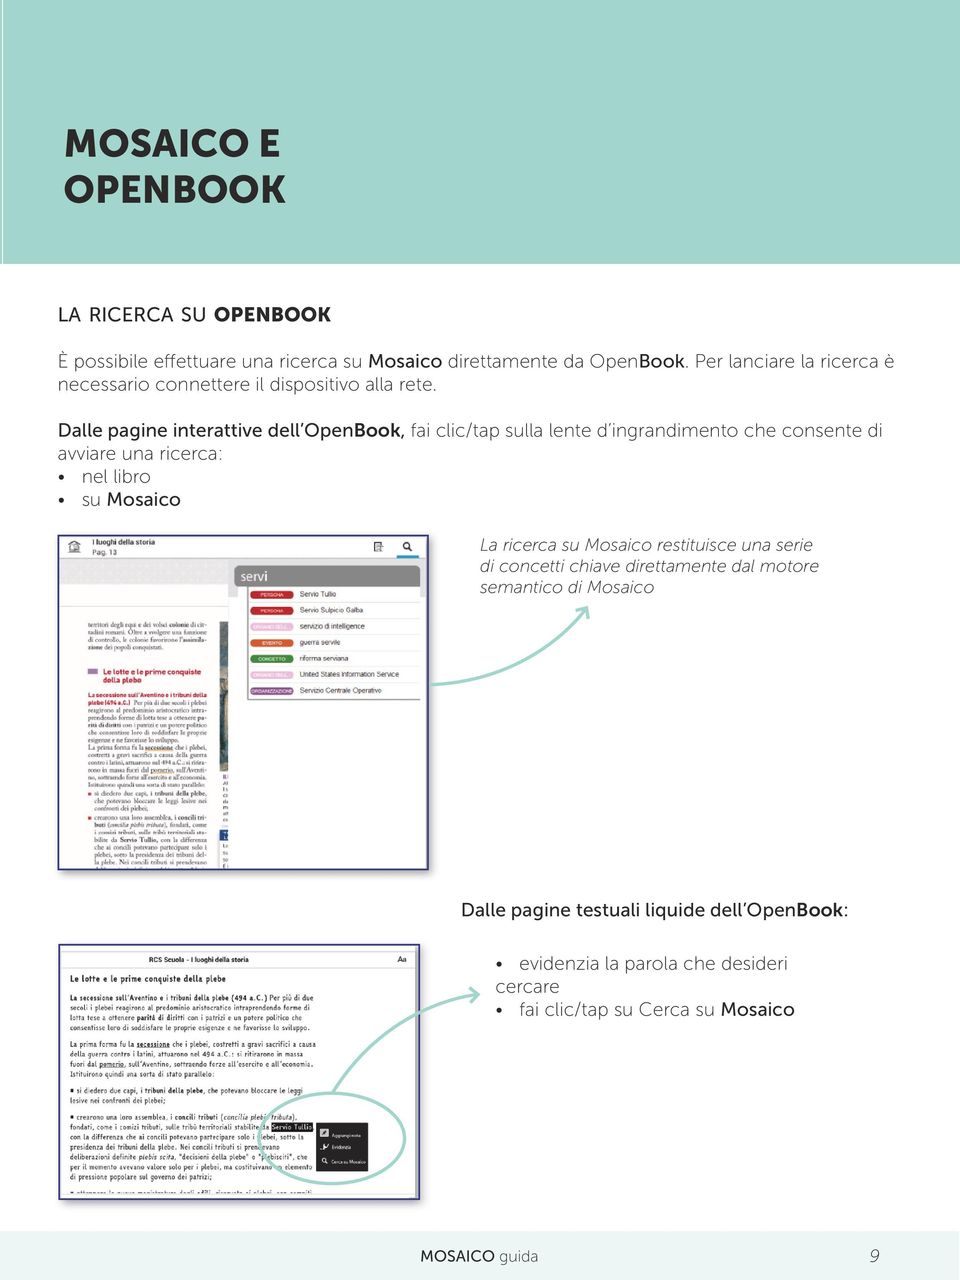 Dalle pagine interattive dell OpenBook, fai clic/tap sulla lente d ingrandimento che consente di avviare una ricerca: nel libro su Mosaico La